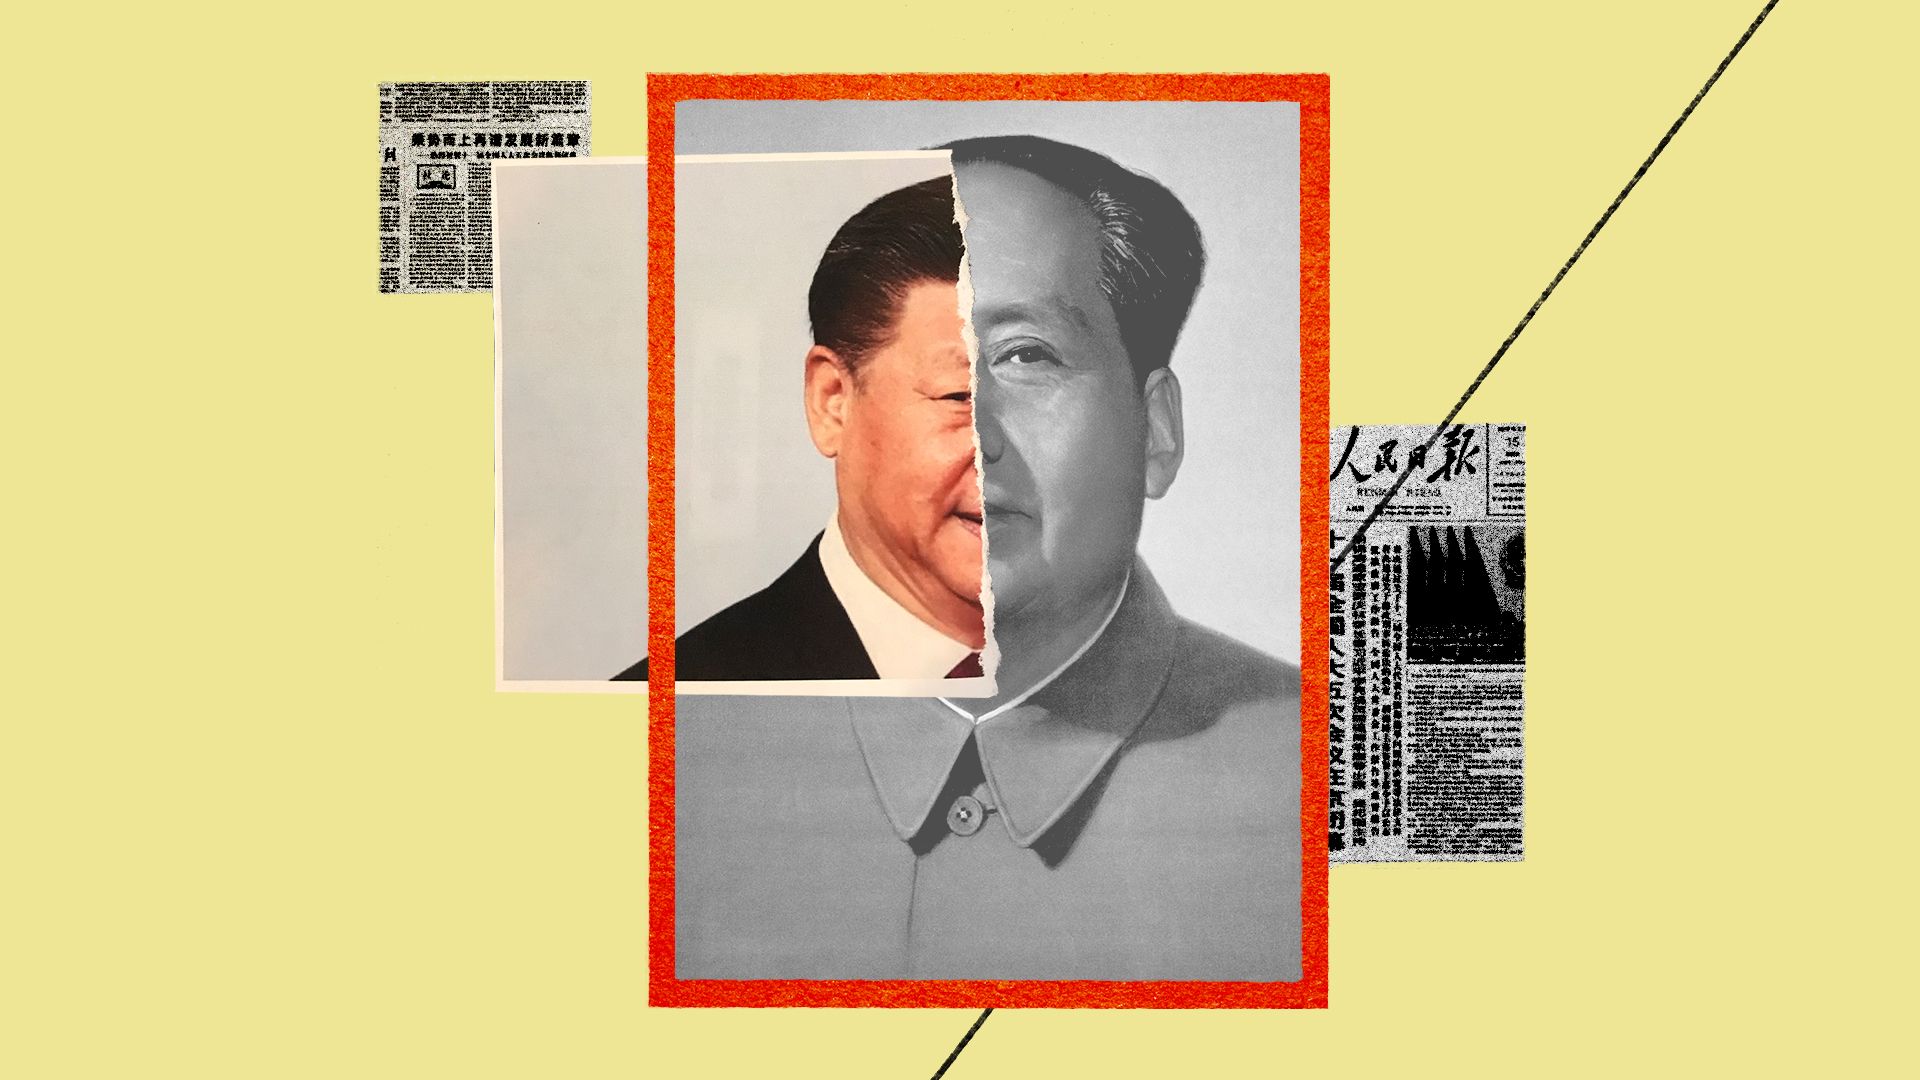 Xi Jinping and Mao Zedong